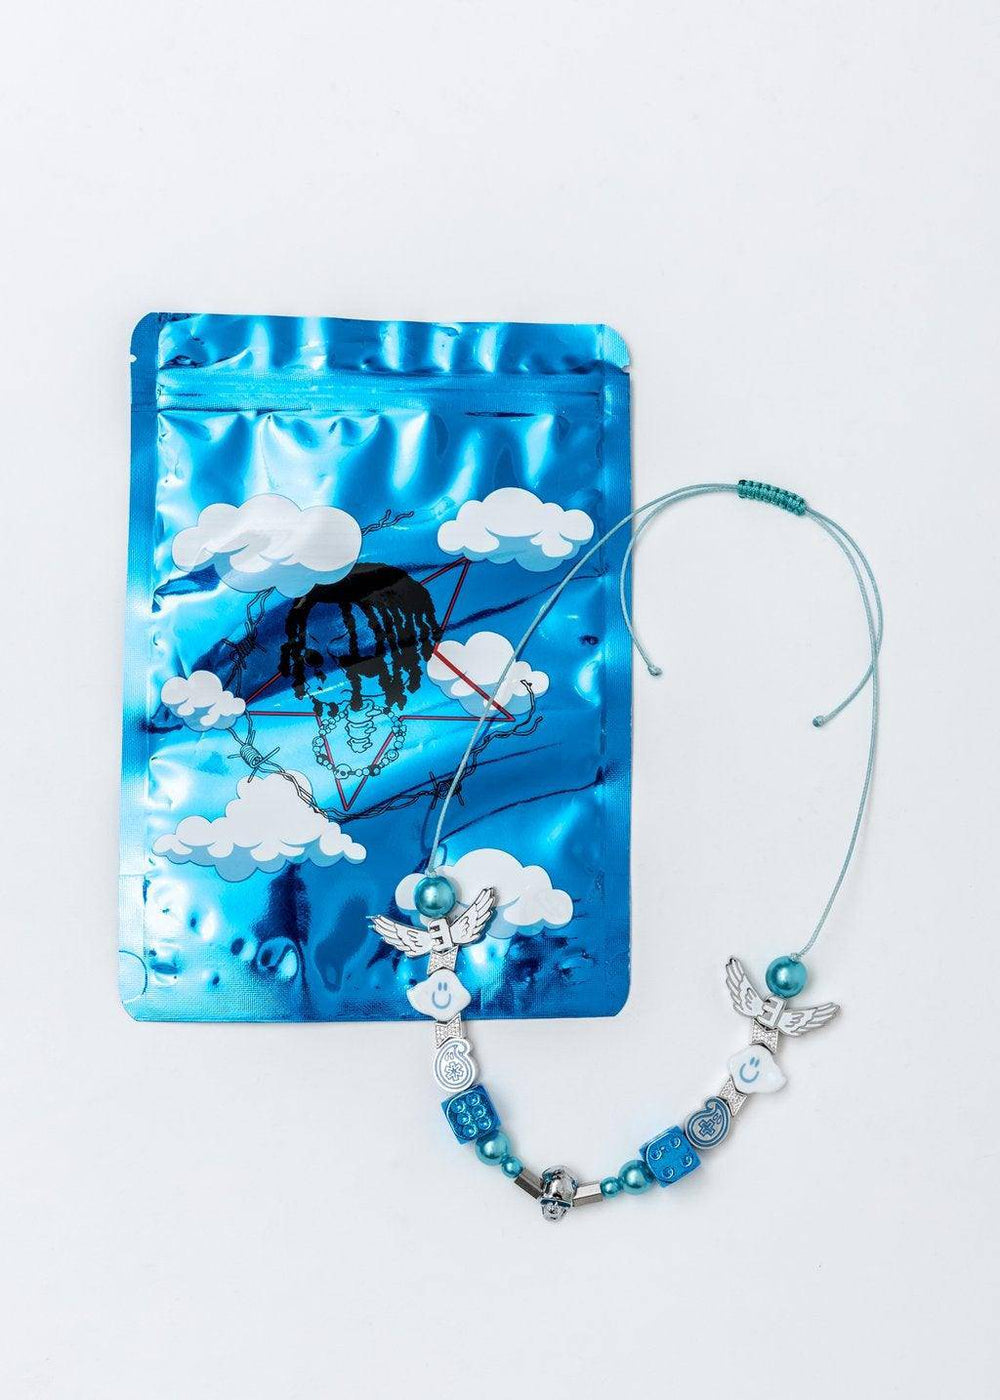 EVAE+ Black Lux Smiley Cloud Necklace Blue - Mores Studio